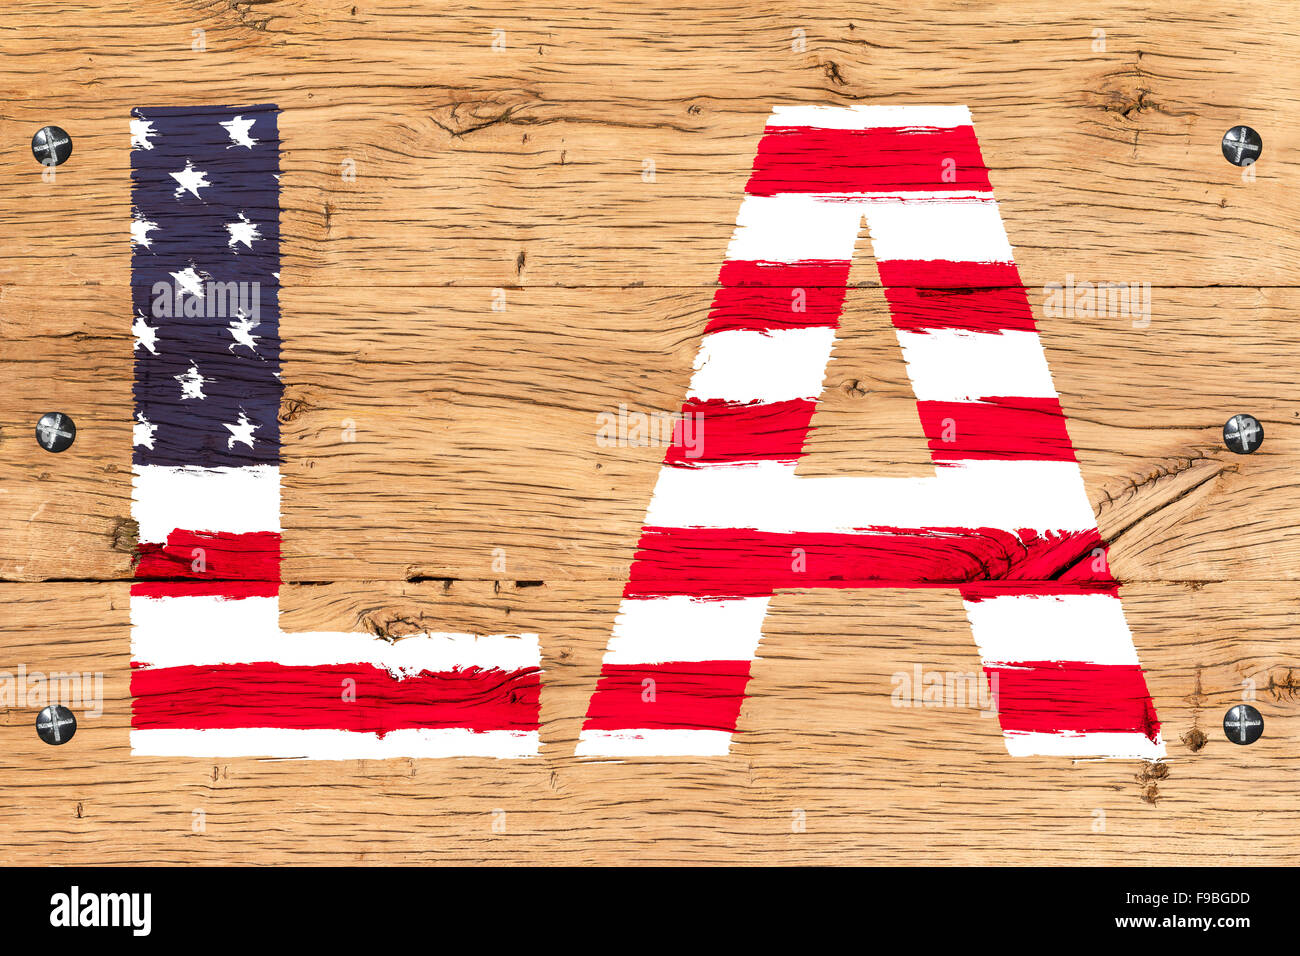 Los Angeles, LA Text mit Muster der Flagge USA gemalt. Malerei ist bunt auf alten Eichen-Holz. Befestigung durch Schrauben oder bol Stockfoto